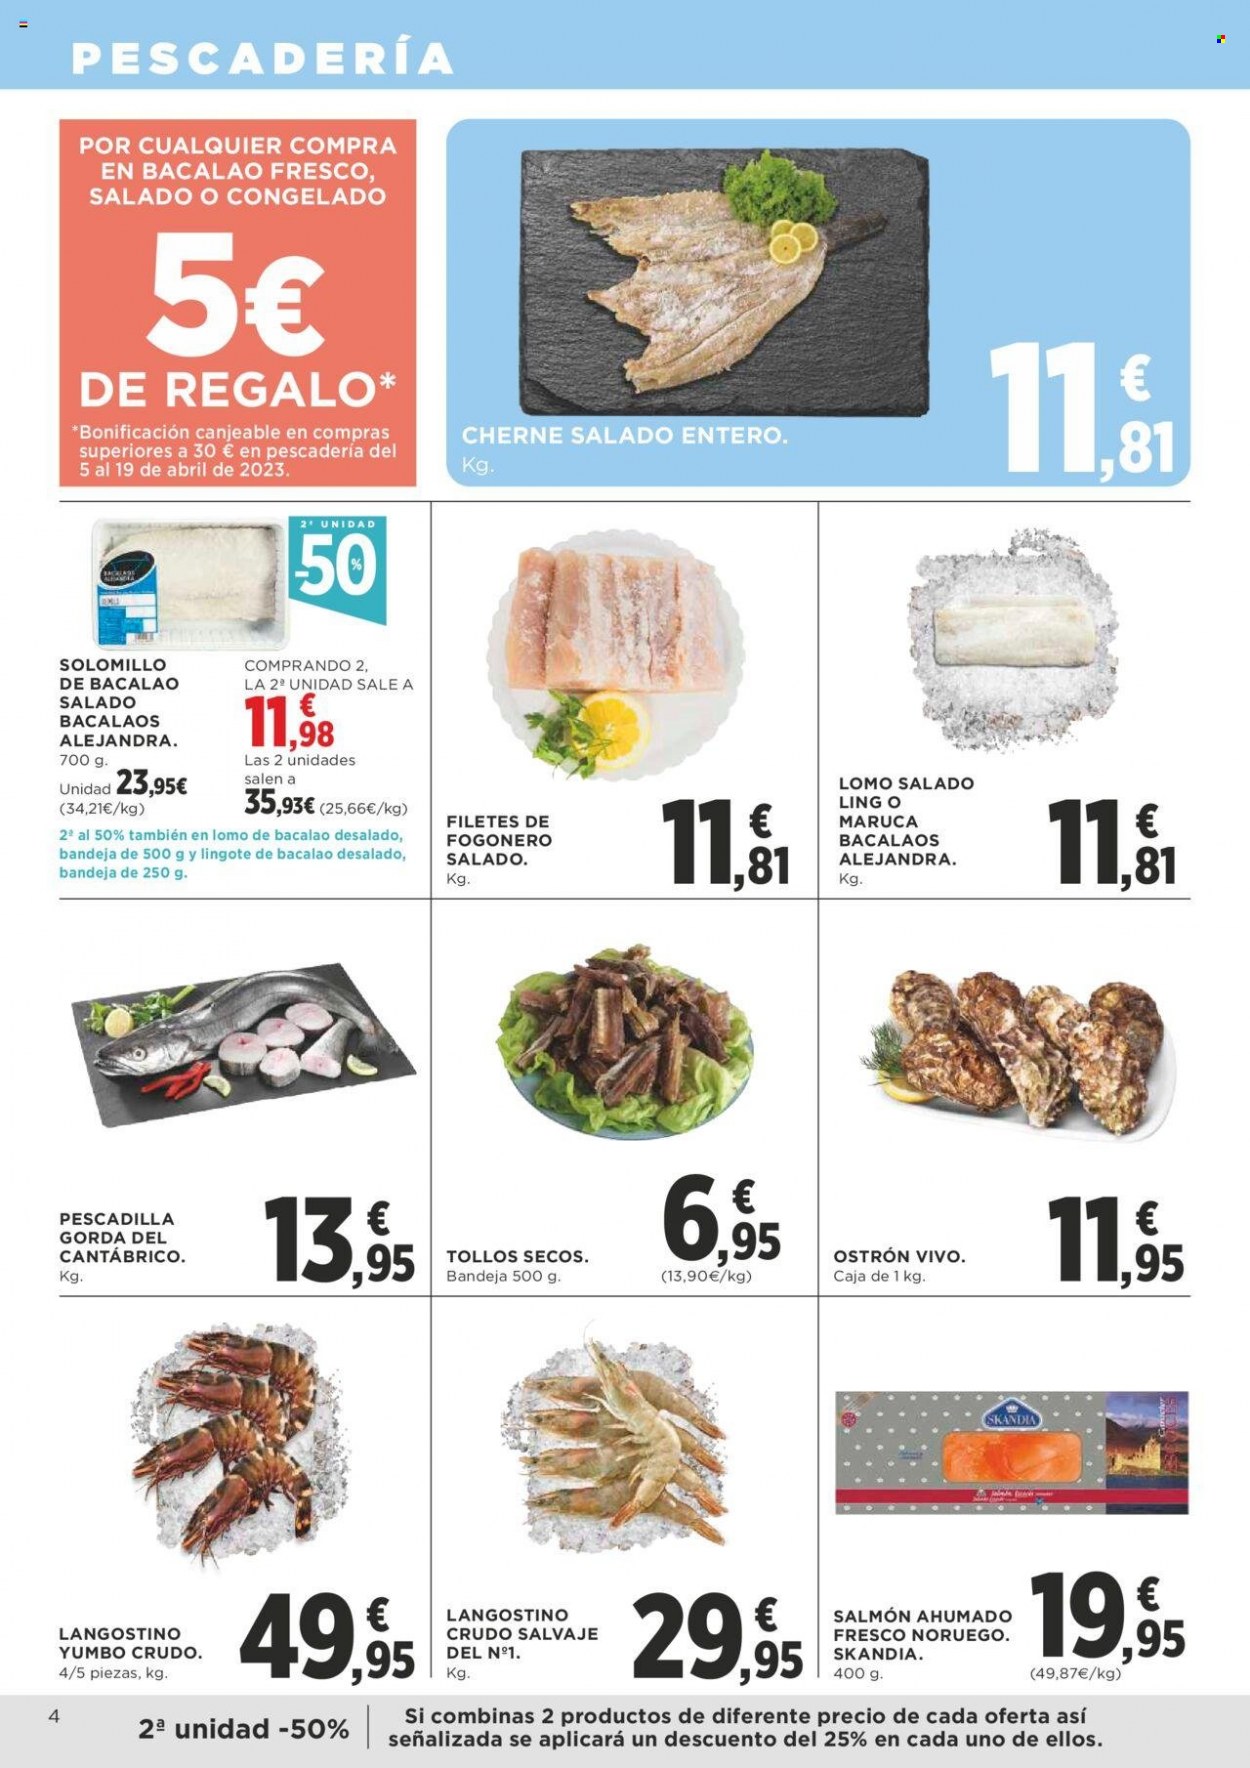 thumbnail - Folleto actual Supercor supermercados - 23/03/23 - 04/04/23 - Ventas - surtido de ahumados, bacalao, langostino, mariscos, pescadilla, salmón, salmón ahumado, pescado, filete de pescado, ostra, cherne, maruca, fogonero. Página 4.